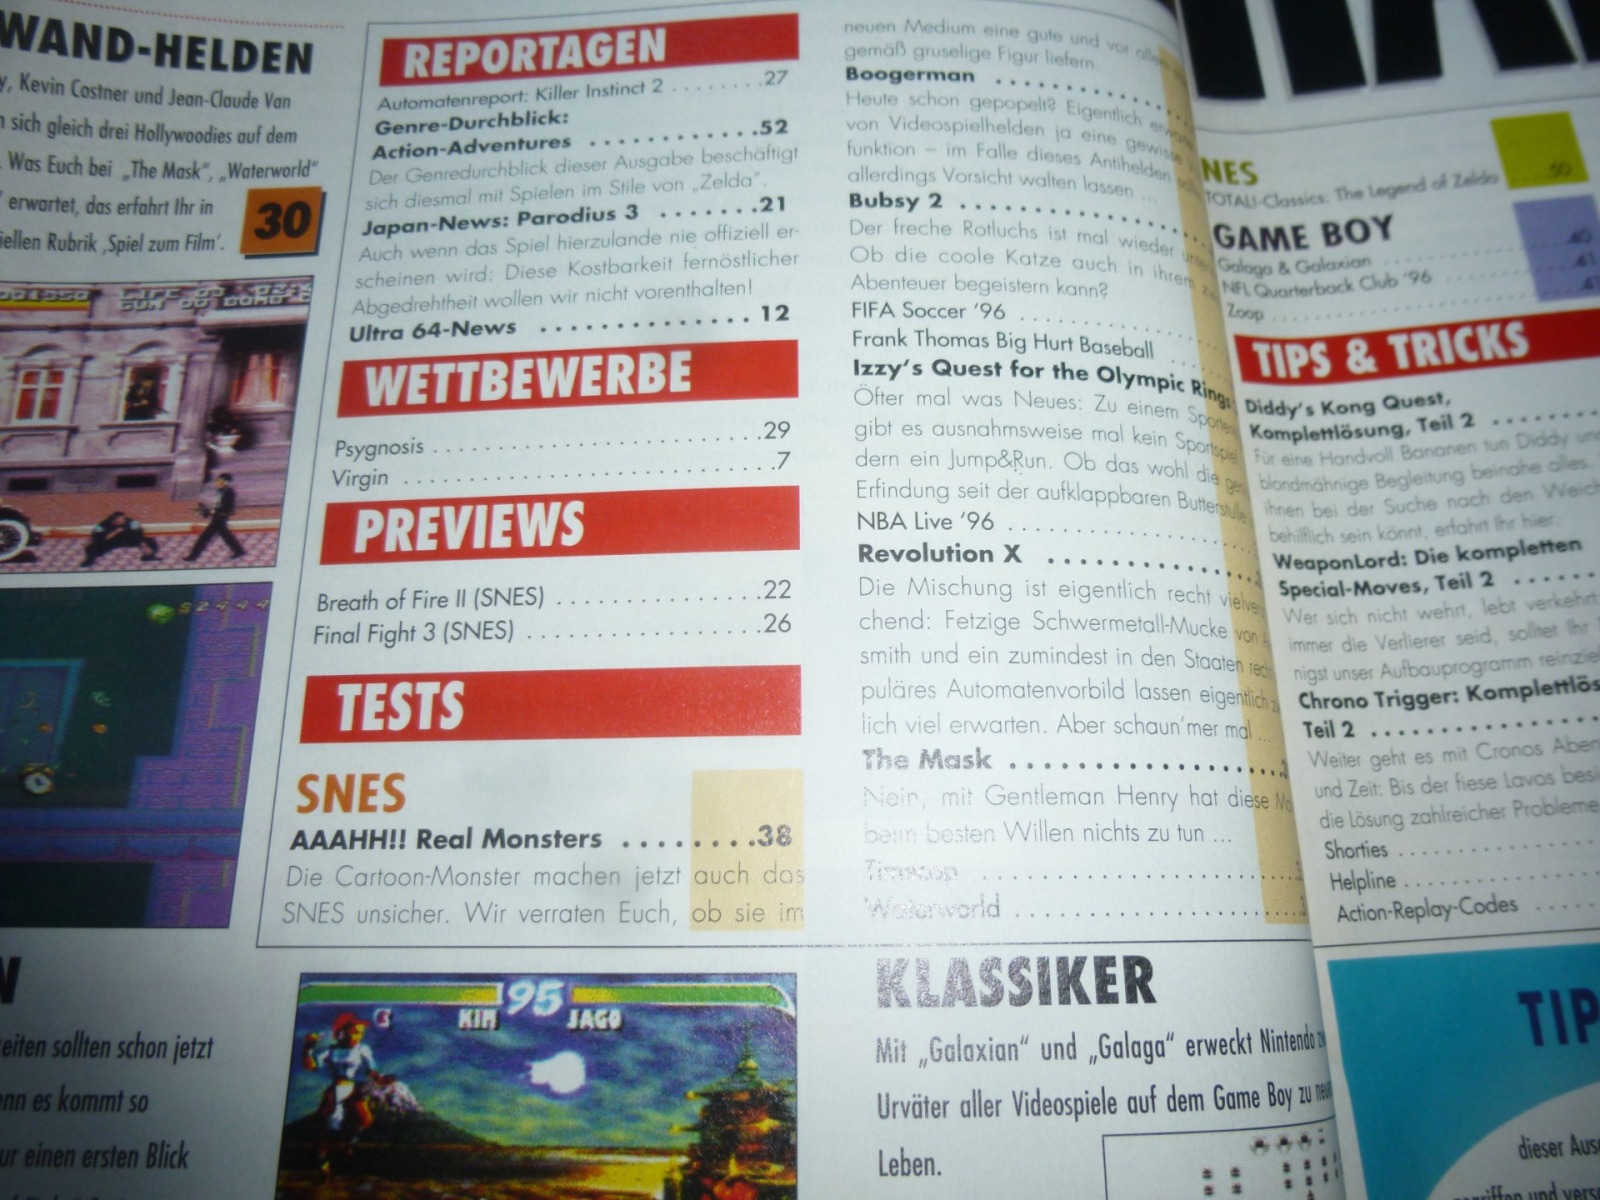 TOTAL Das unabhängige Magazin - 100% Nintendo - Ausgabe 3/96 1996 2